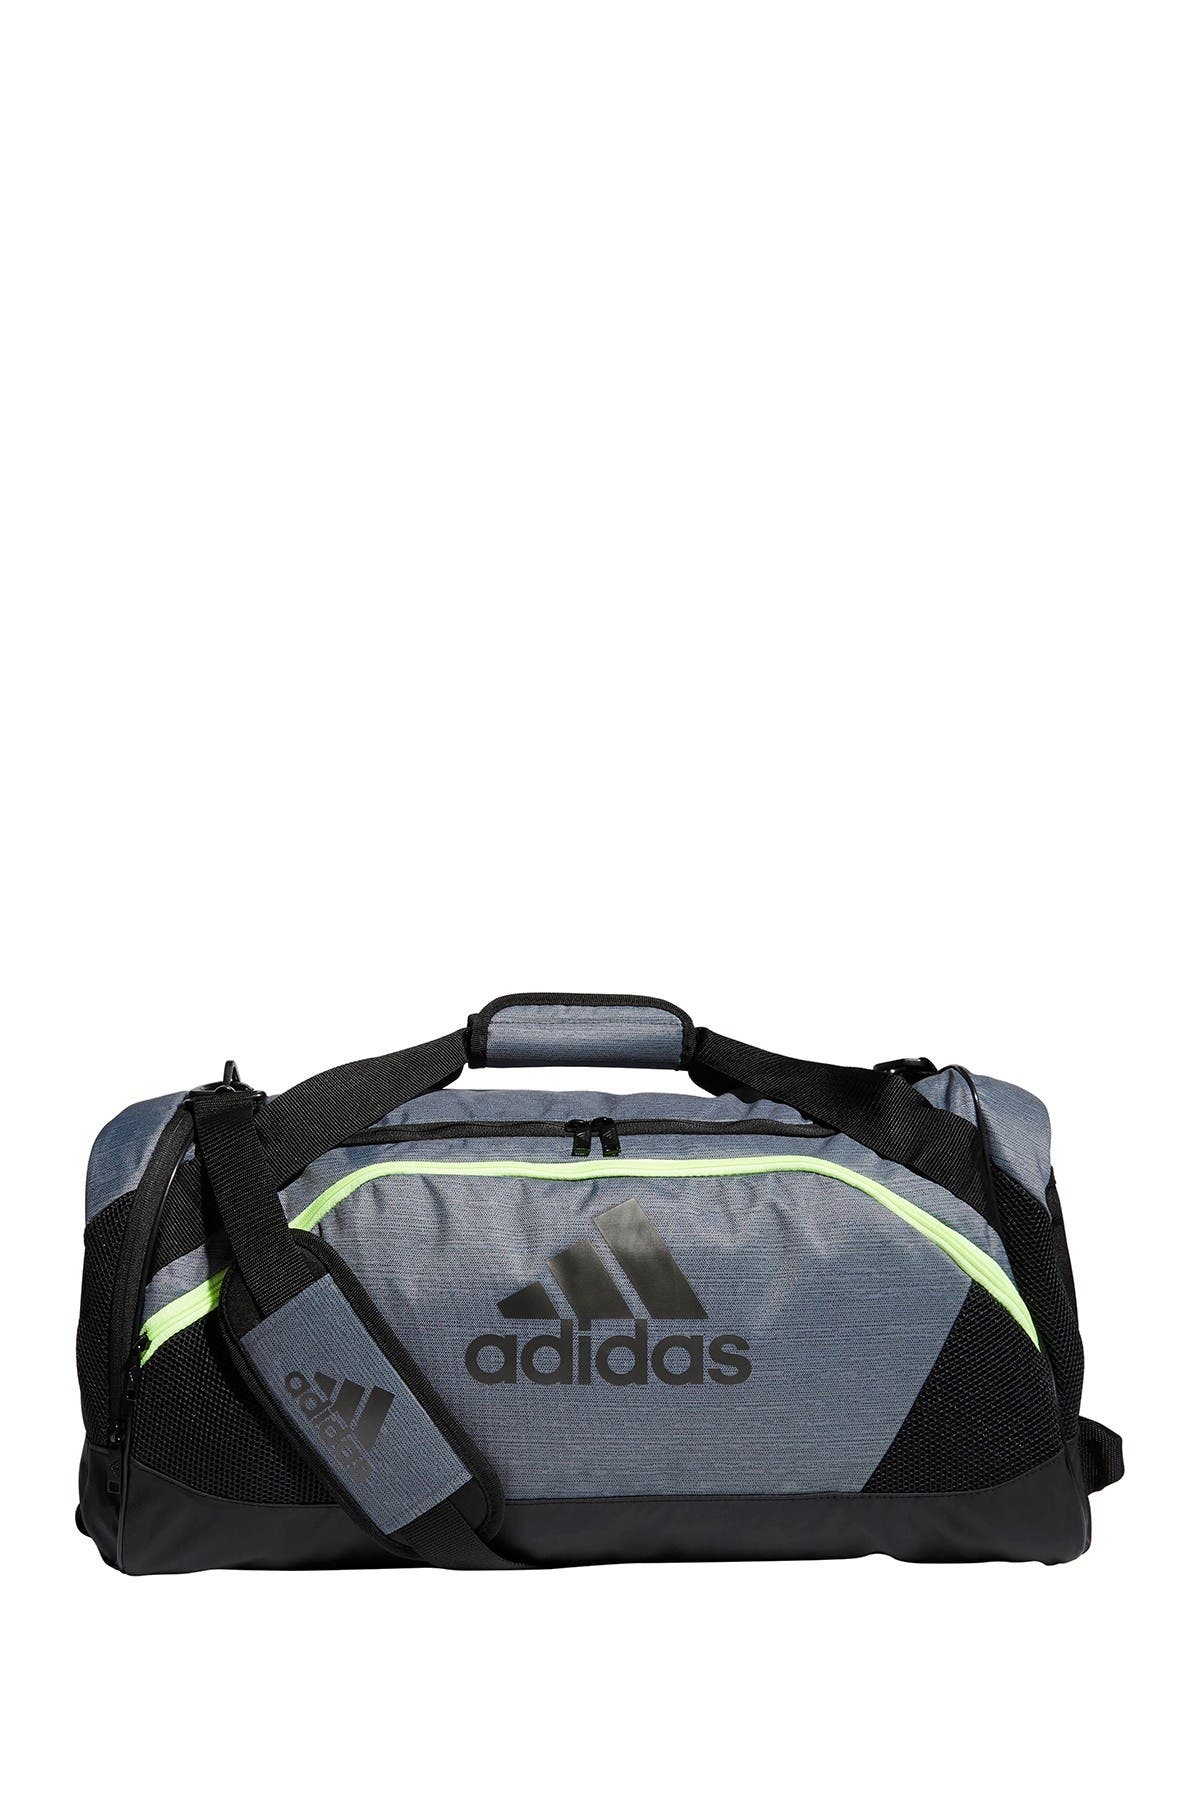 adidas team issue ii medium duffel bag